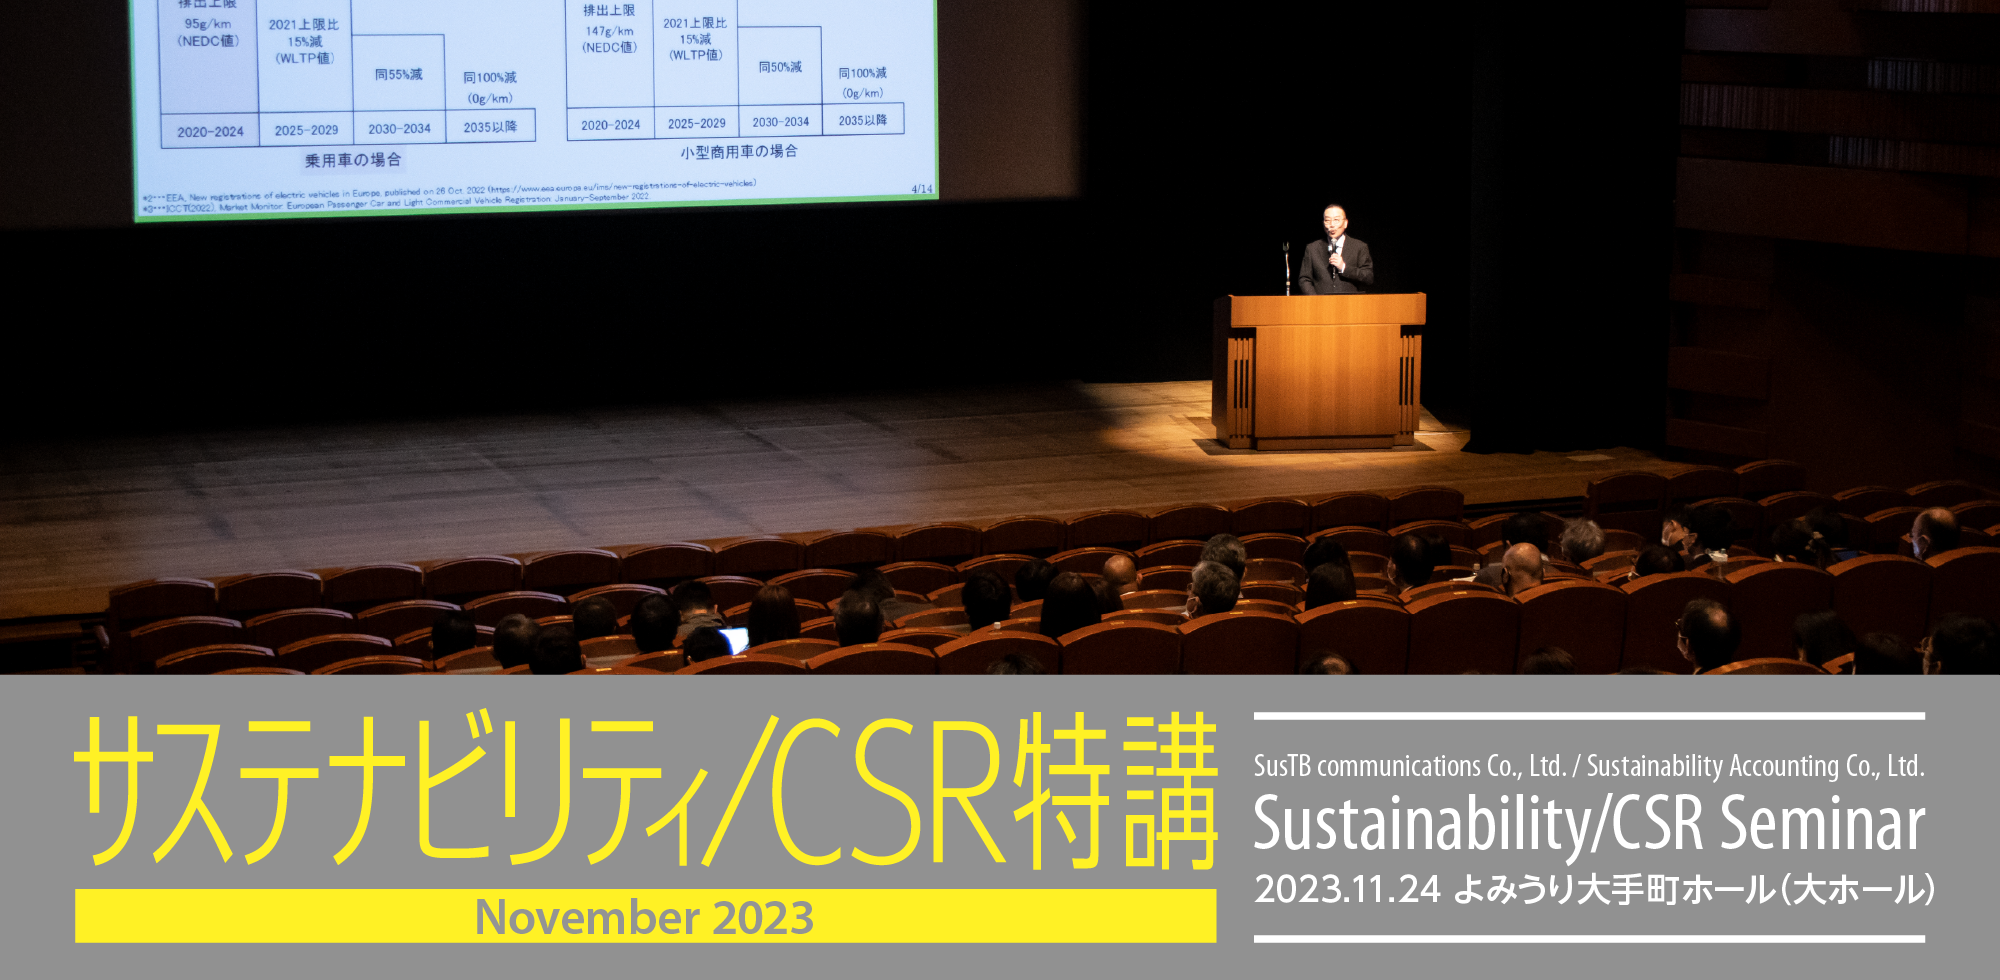 サステナビリティ/CSR特講/CSR SEMINAR 2022.12.9 よみうり大手町ホール（大ホール）